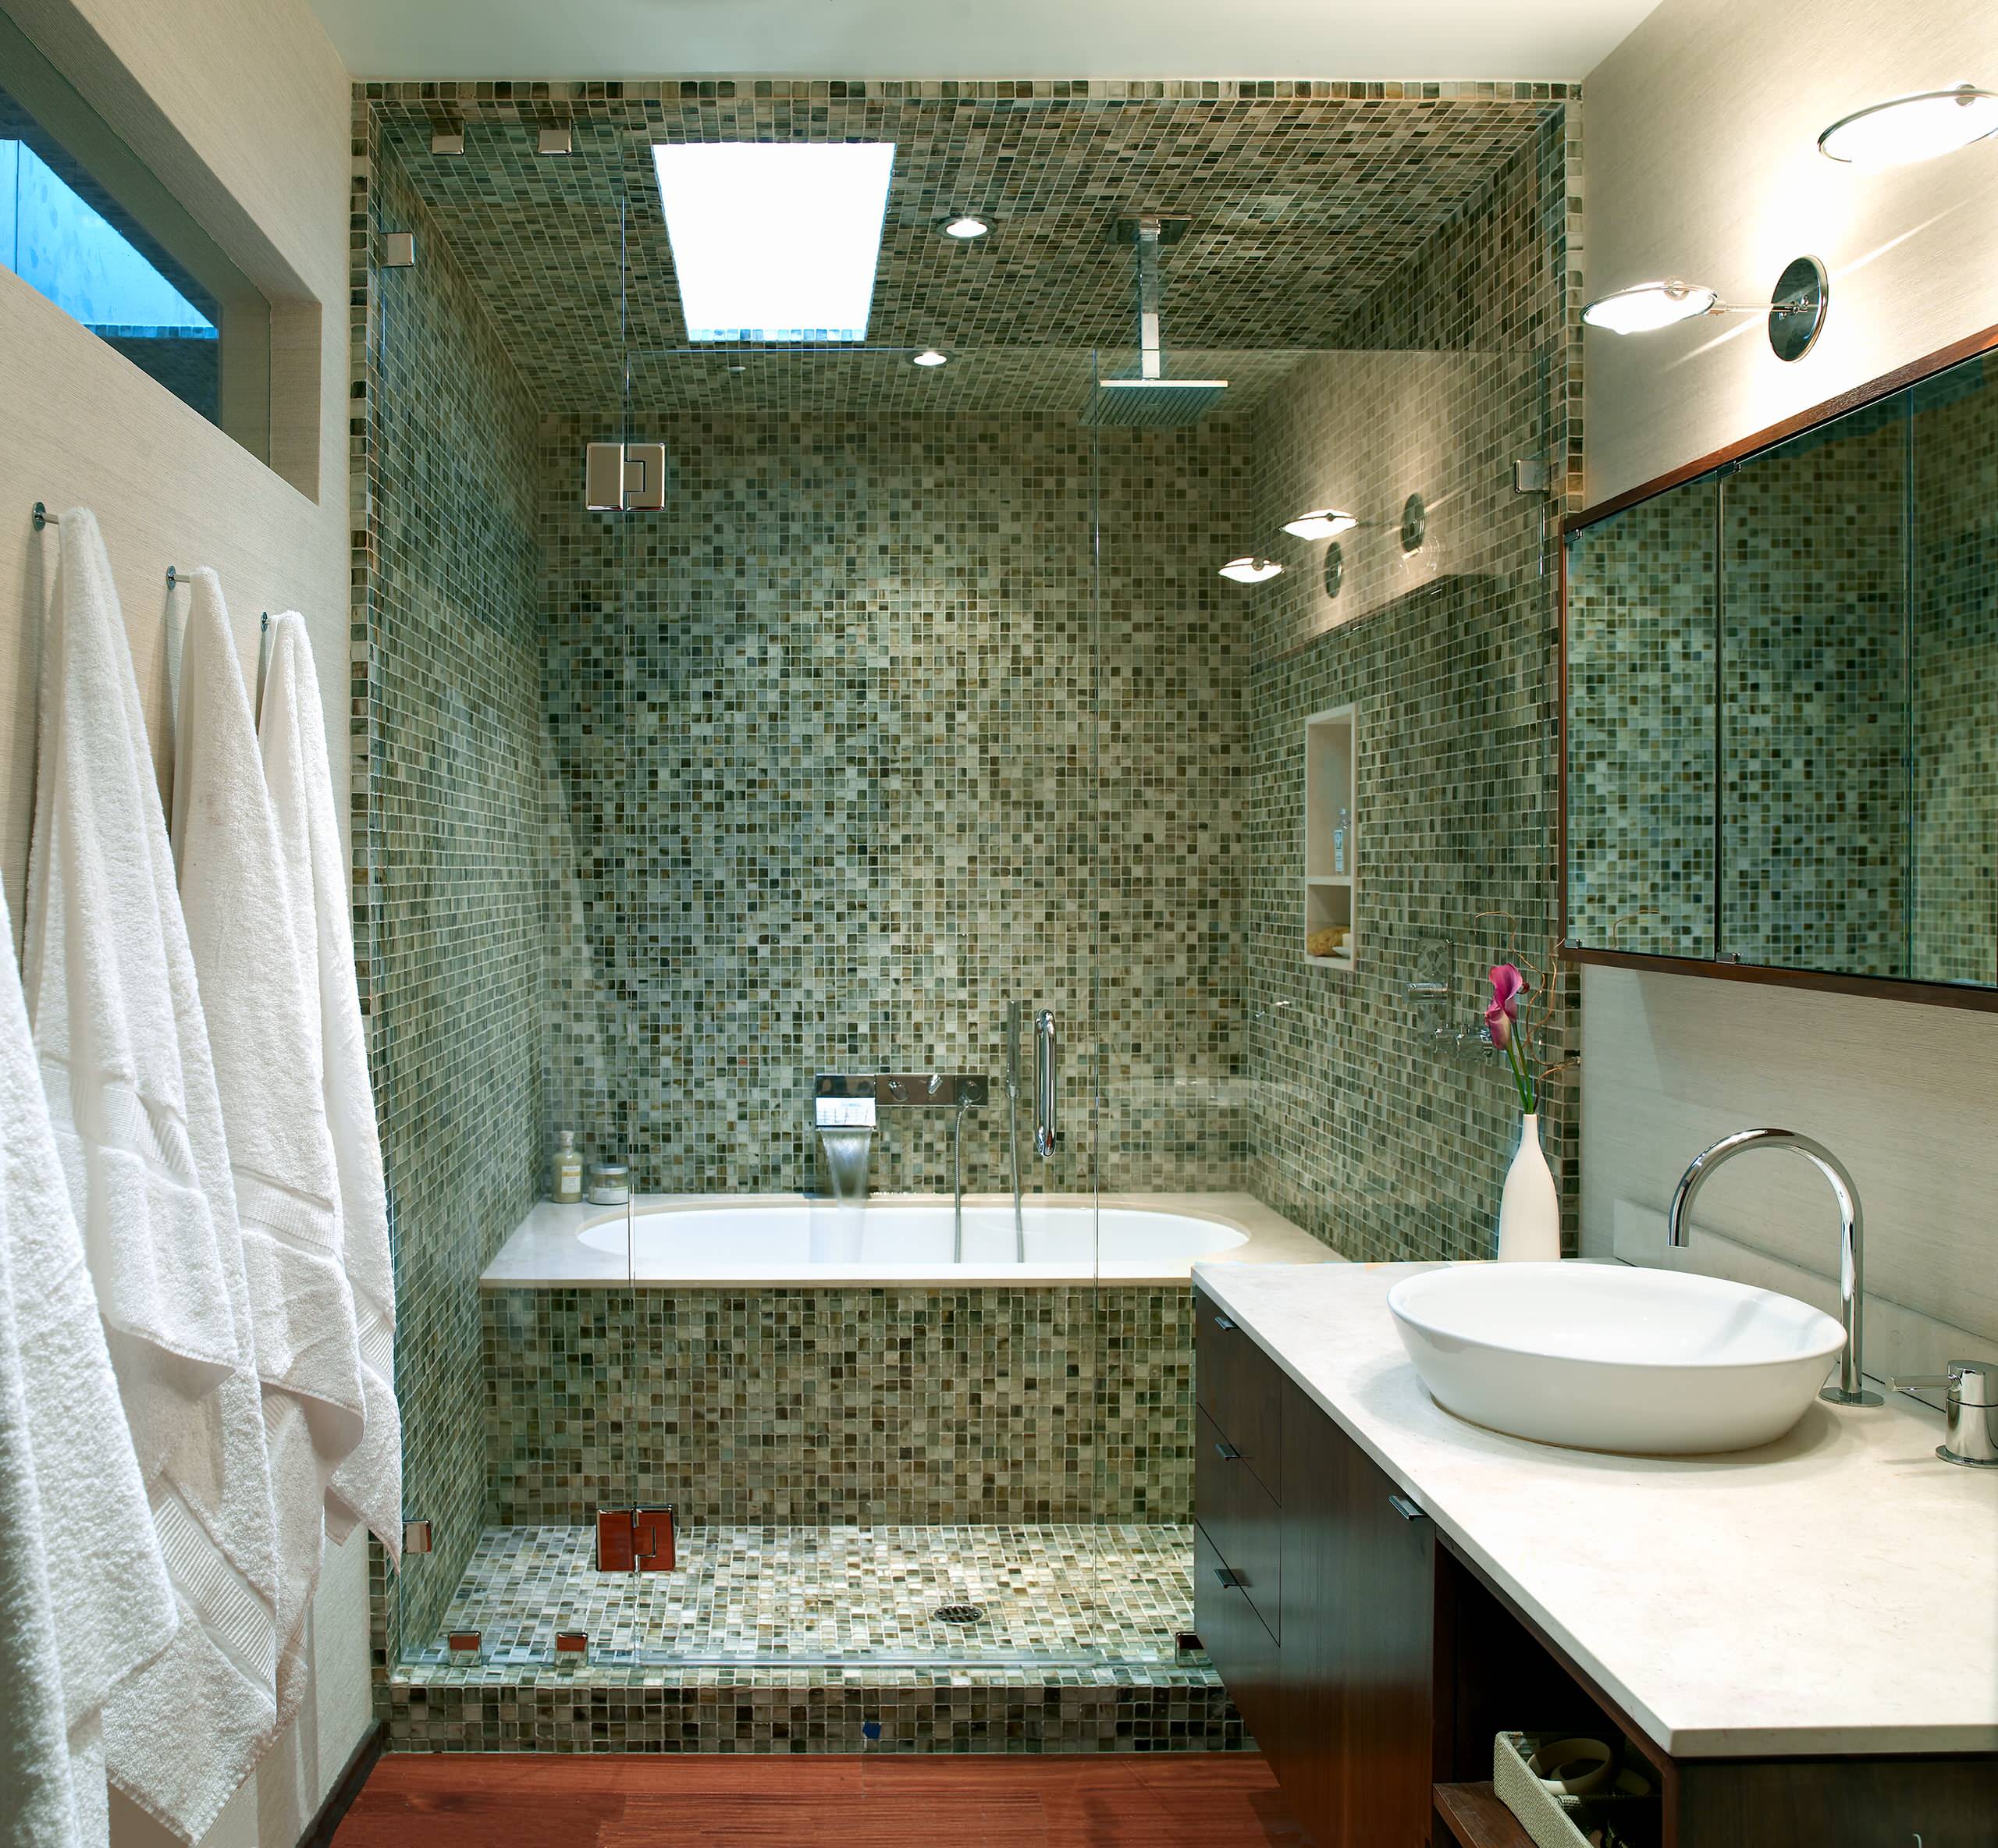 Потолок плитка в ванной комнате. Отделка ванной комнаты мозаикой. Мозаика в маленькой ванной комнате. Ванная отделанная мозаикой. Ванная комната отделанная мозаикой.